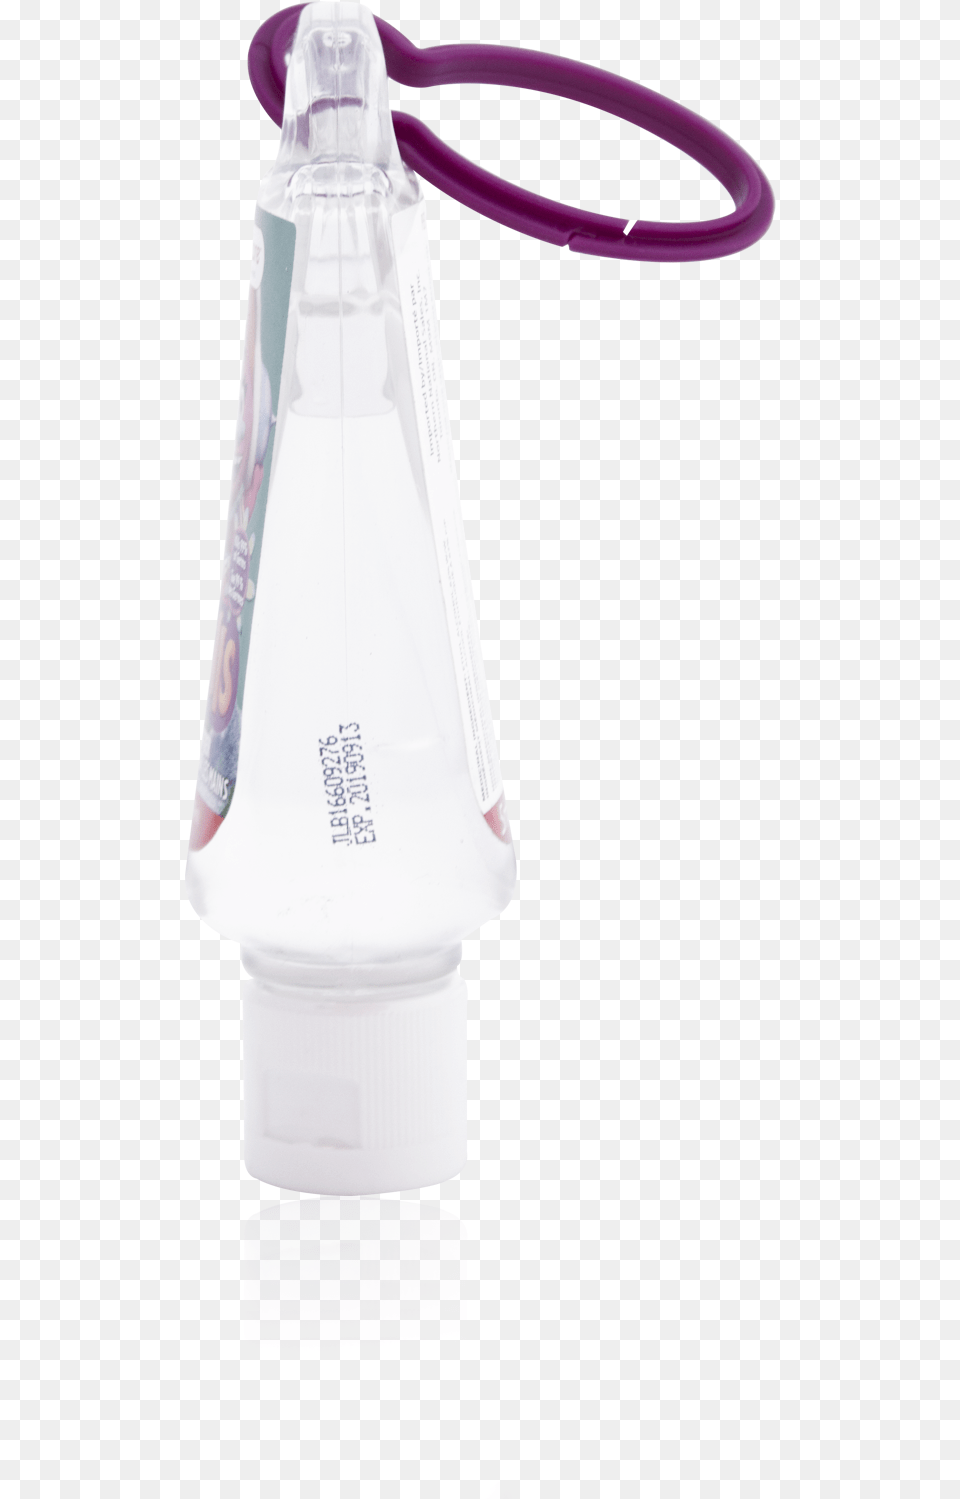 Water Bottle, Water Bottle, Smoke Pipe Free Transparent Png